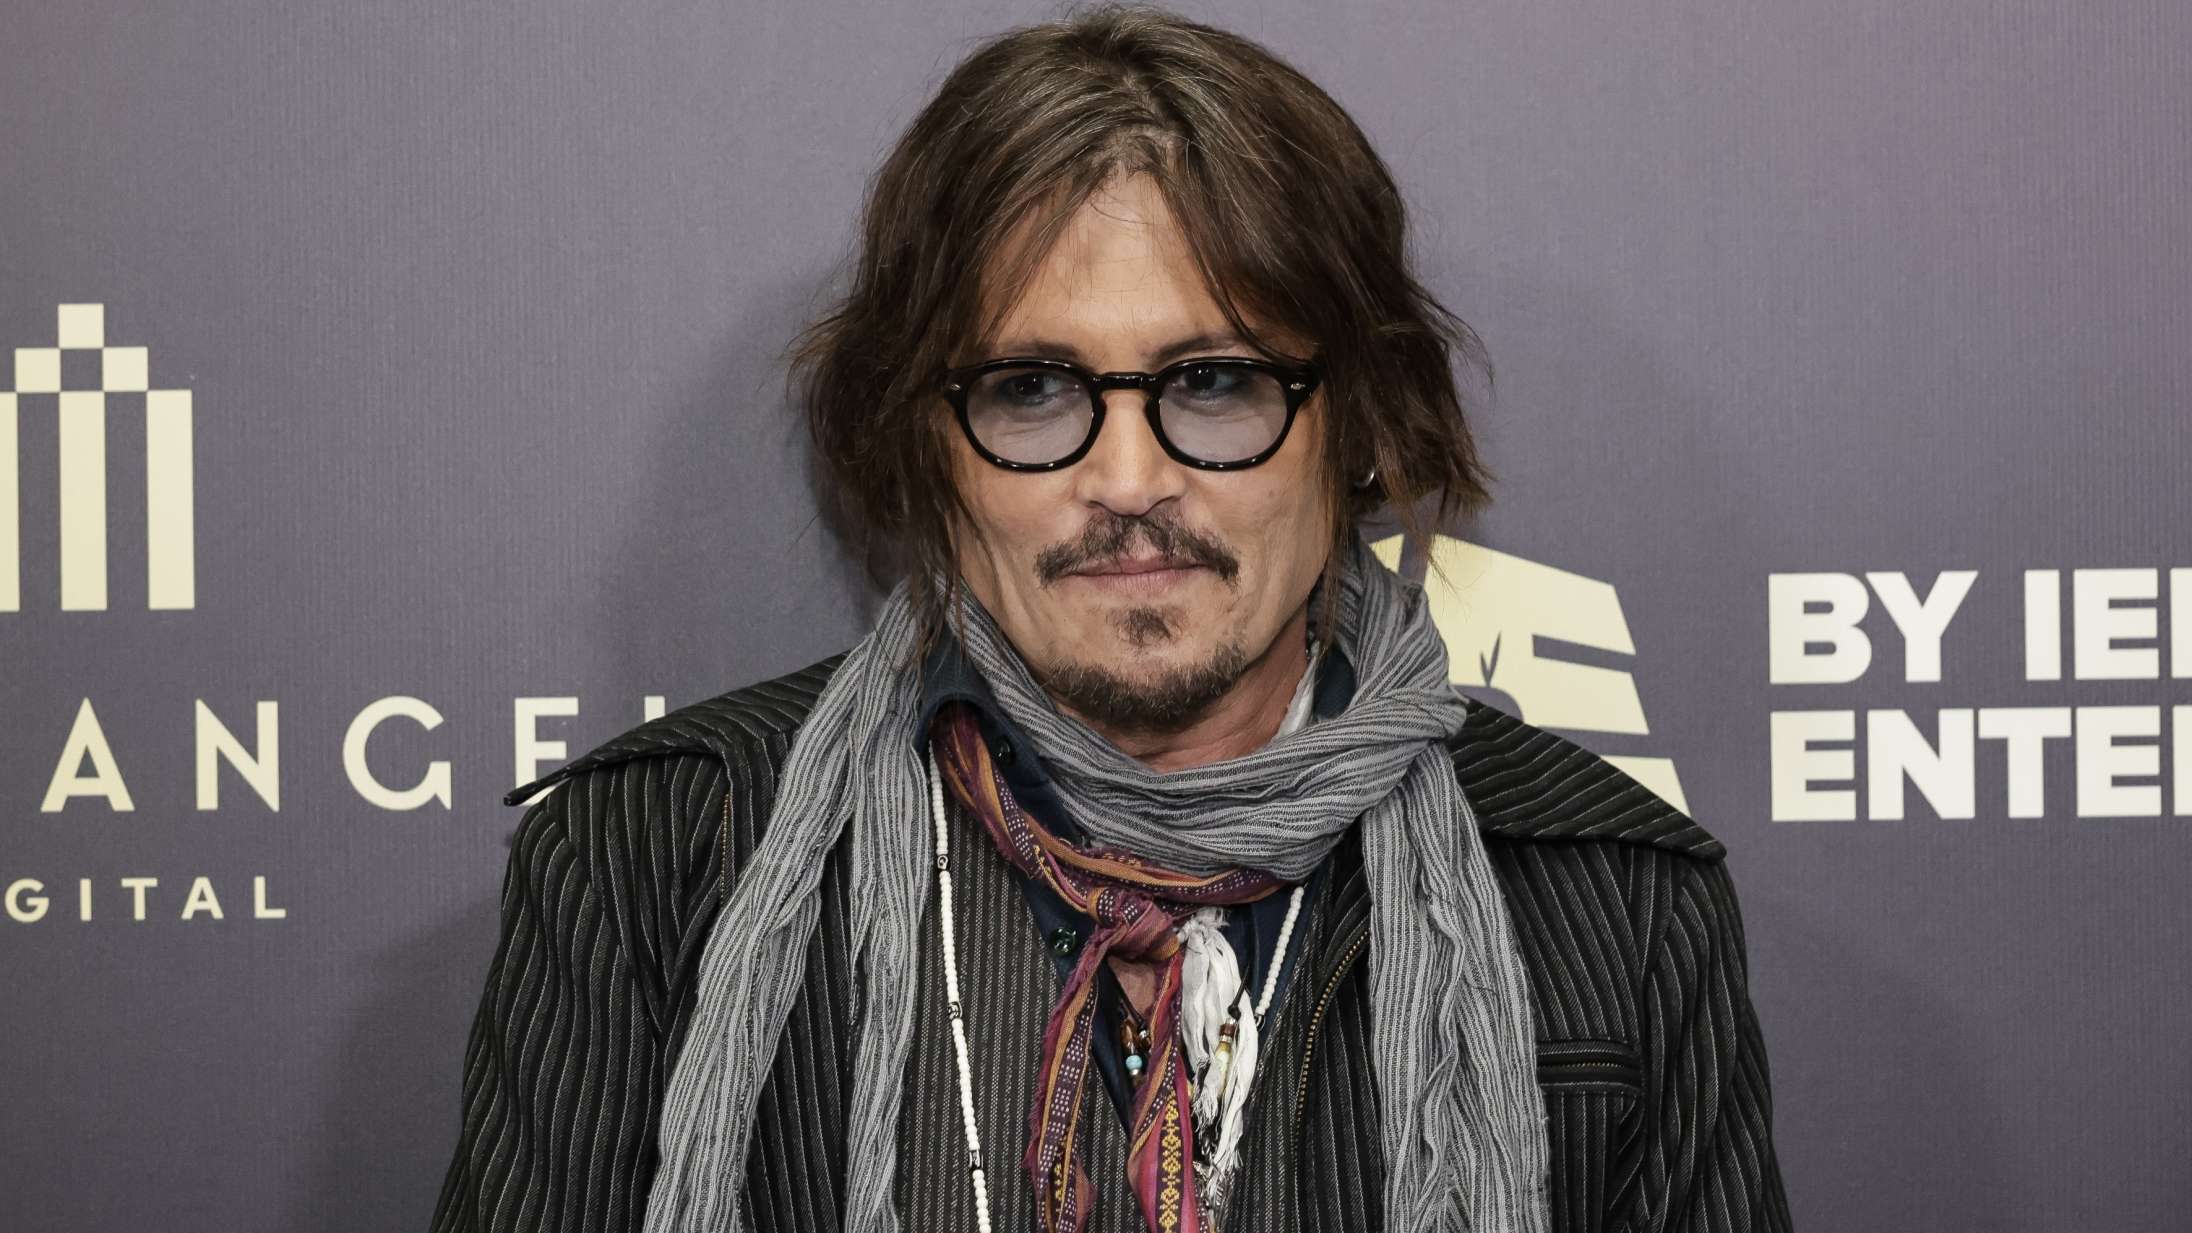 Se første billede af Johnny Depp som konge i første store rolle efter retssag